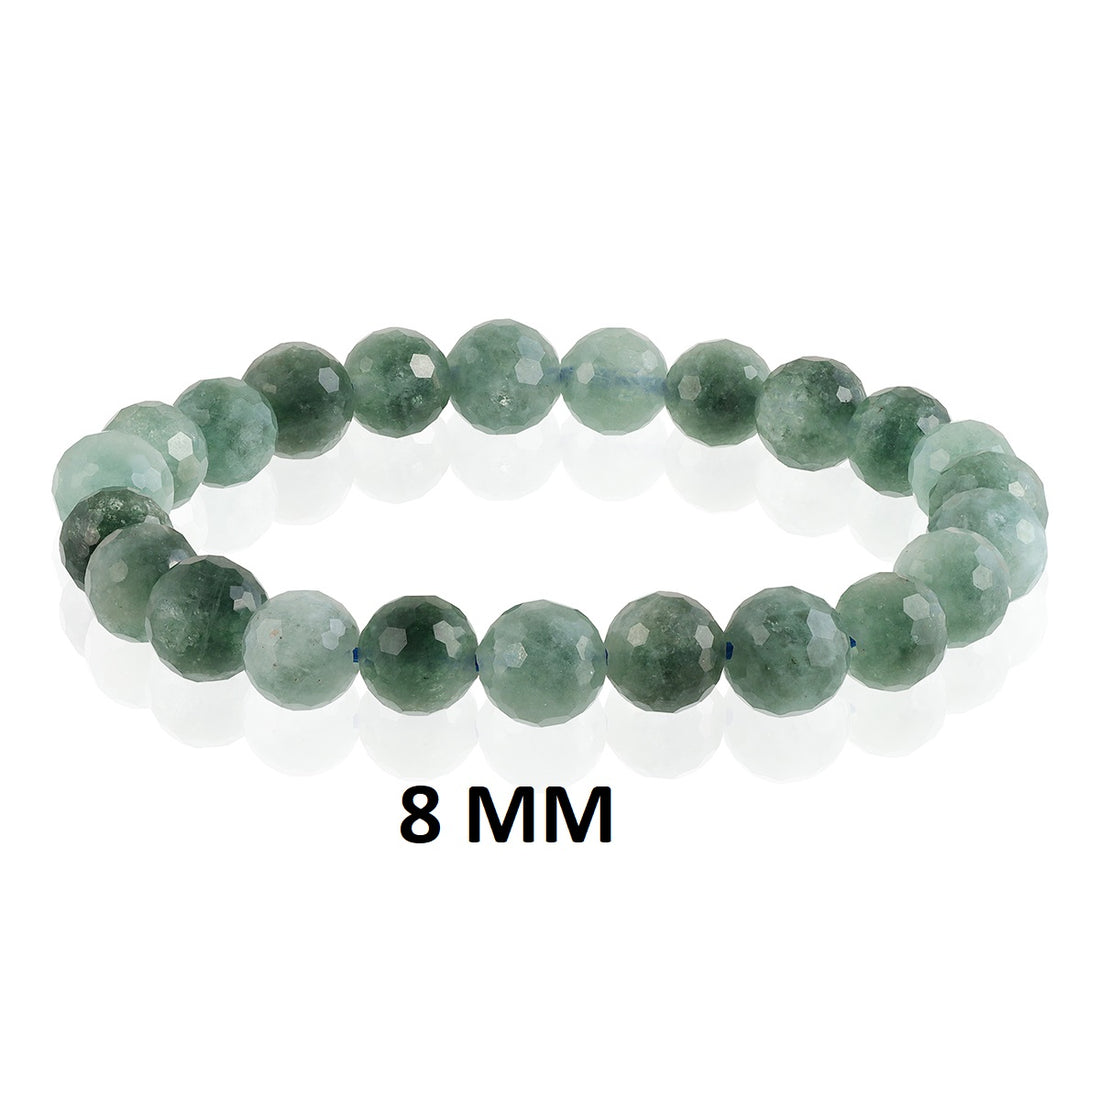 Teal Green Crystal Quartz Bracelet symbolizing vibrant elegance, affordability, and positive energy